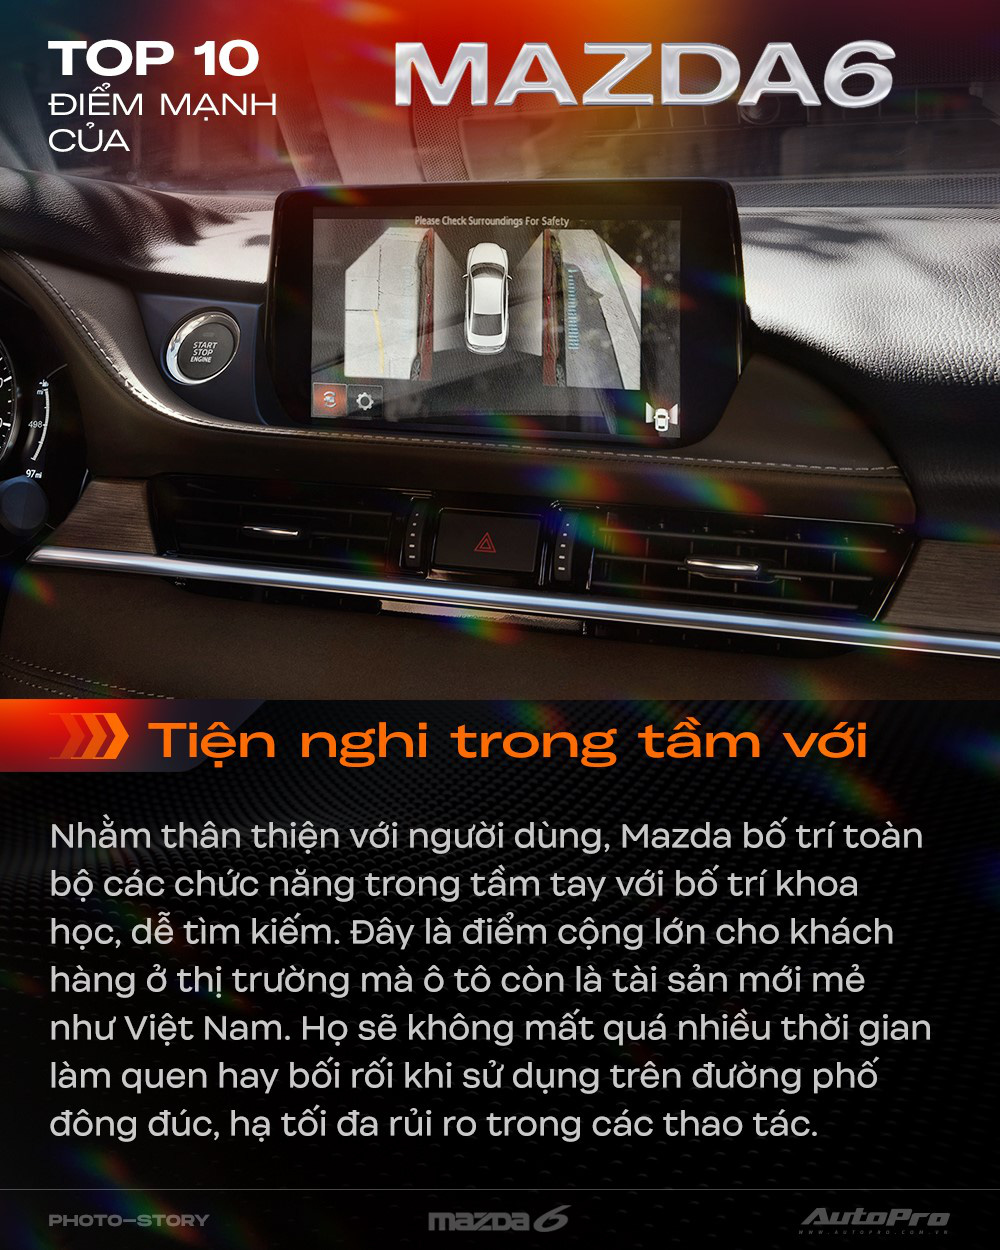 10 điểm giúp Mazda6 mới thuyết phục khách hàng Việt Nam - Ảnh 4.